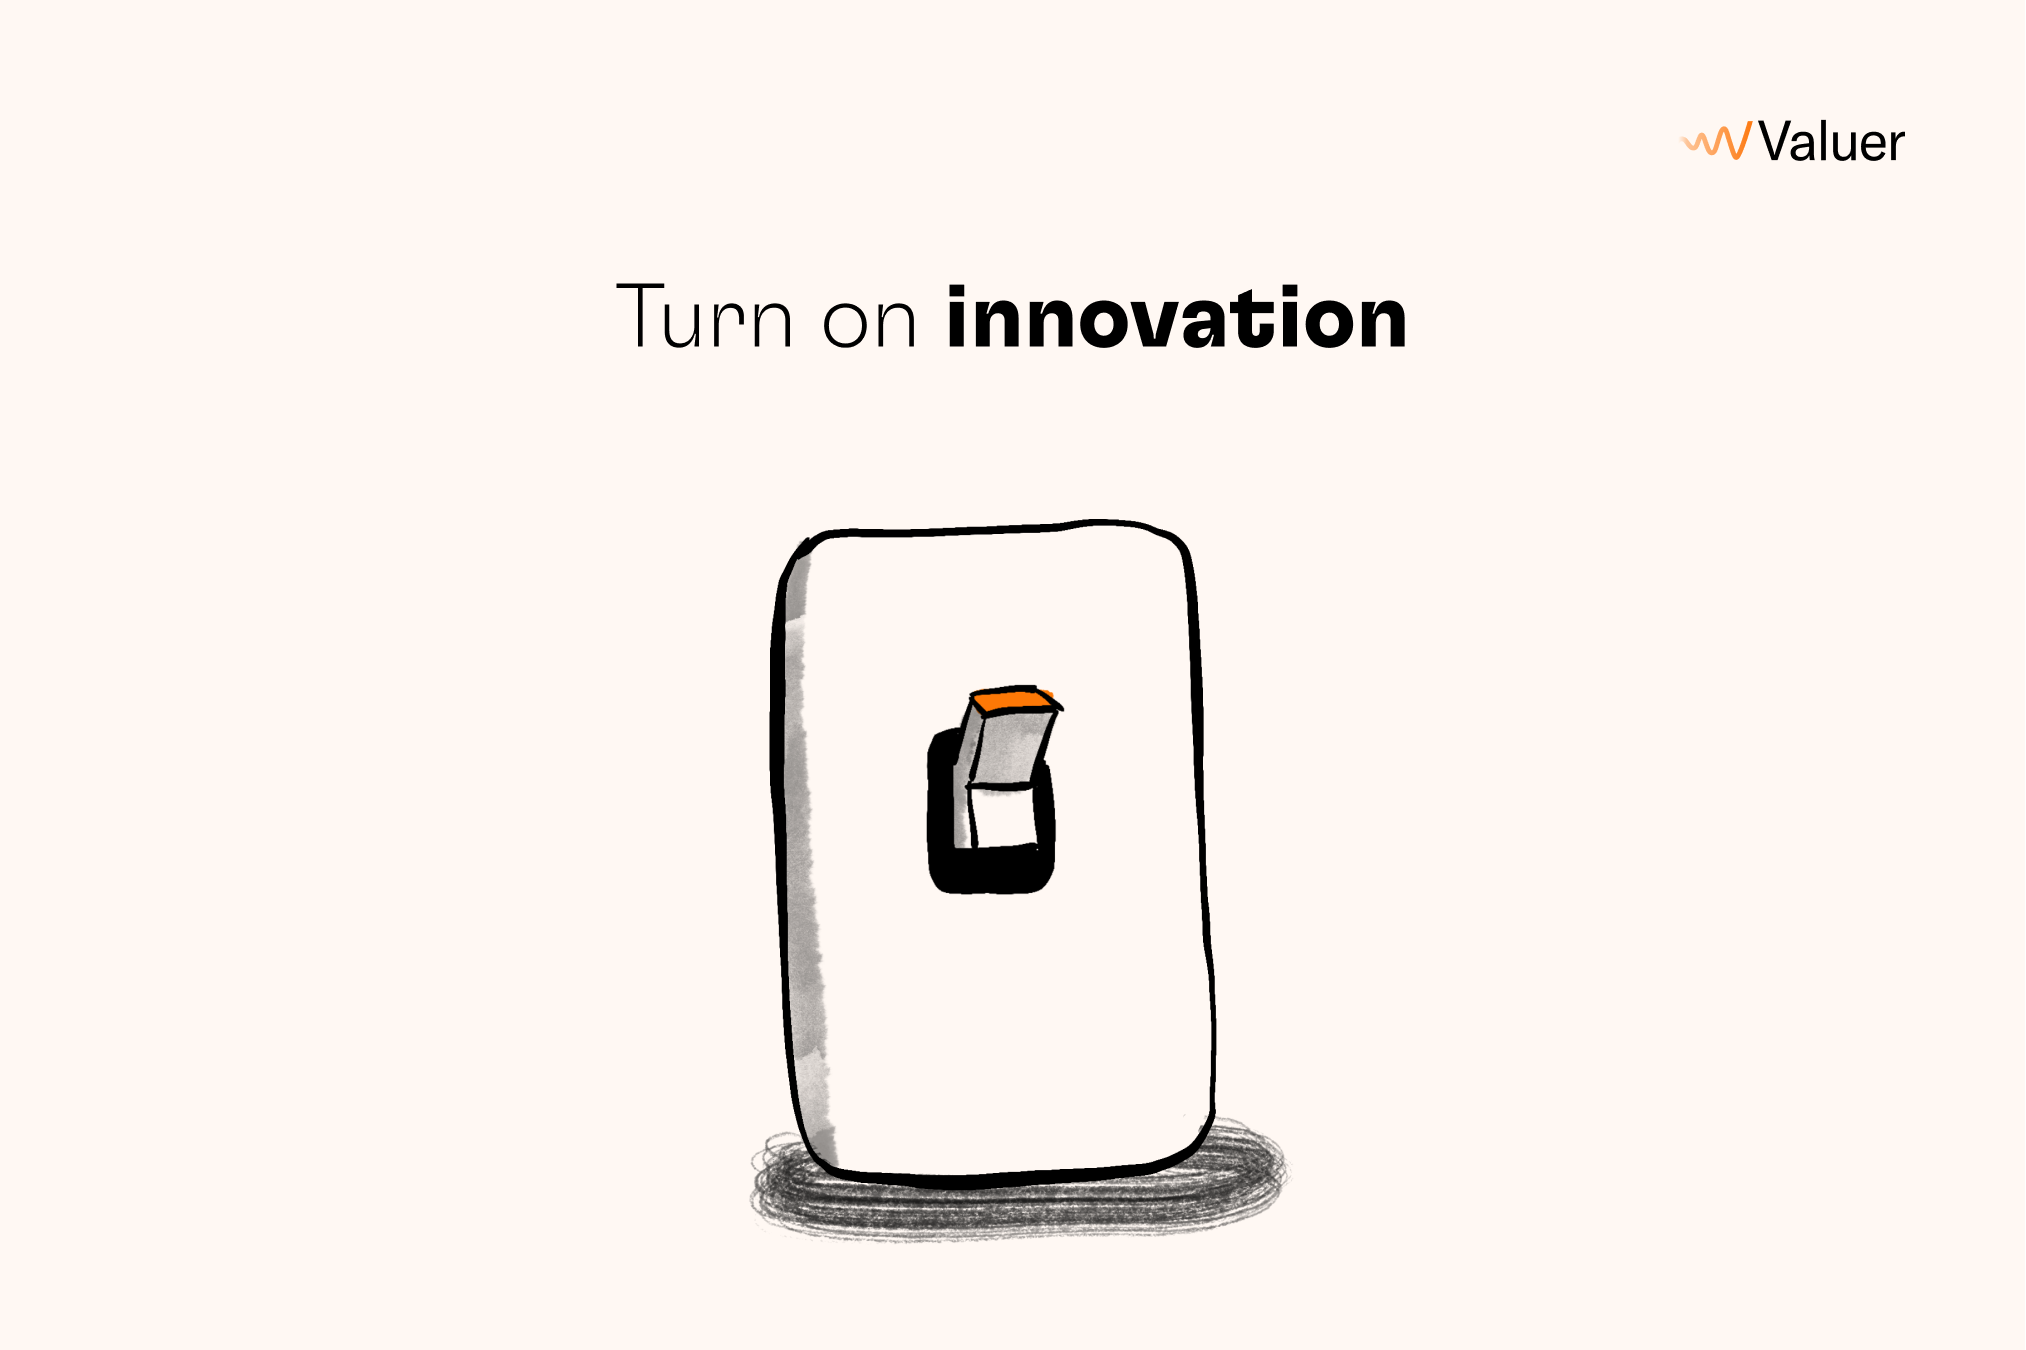 Turn on innovation